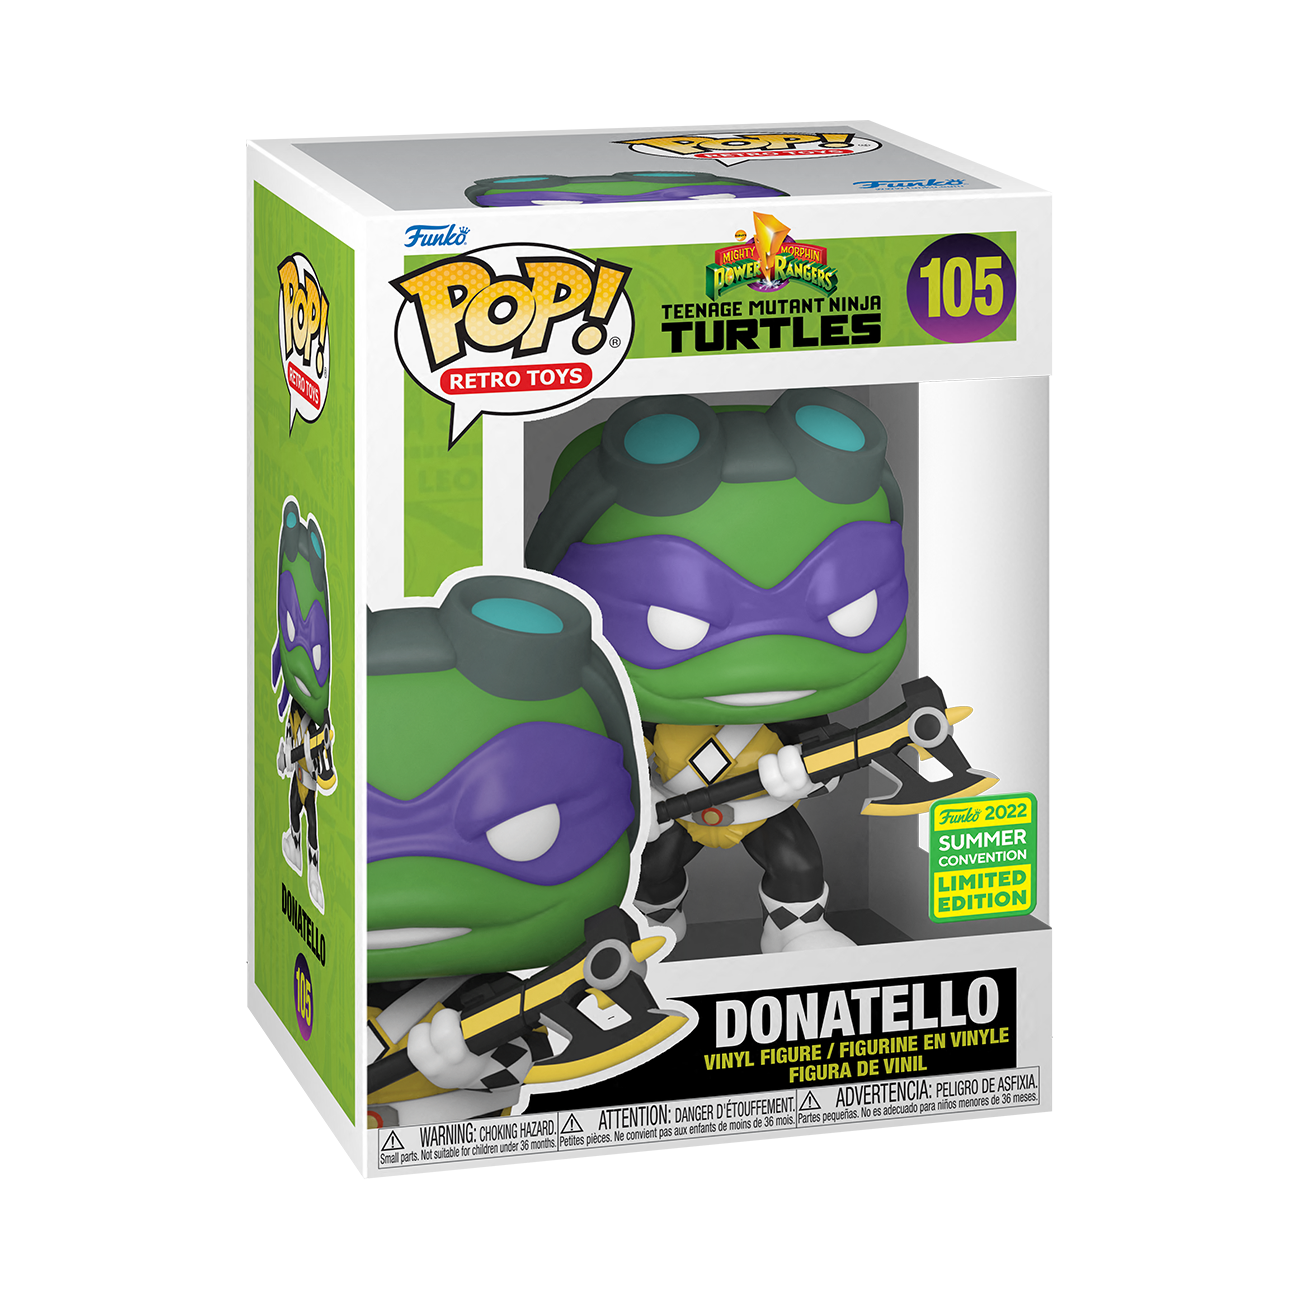 Funko Pop Retro Toys: TMNT x Power Rangers - Donatello Black Ranger Exclusivo SDCC 2022